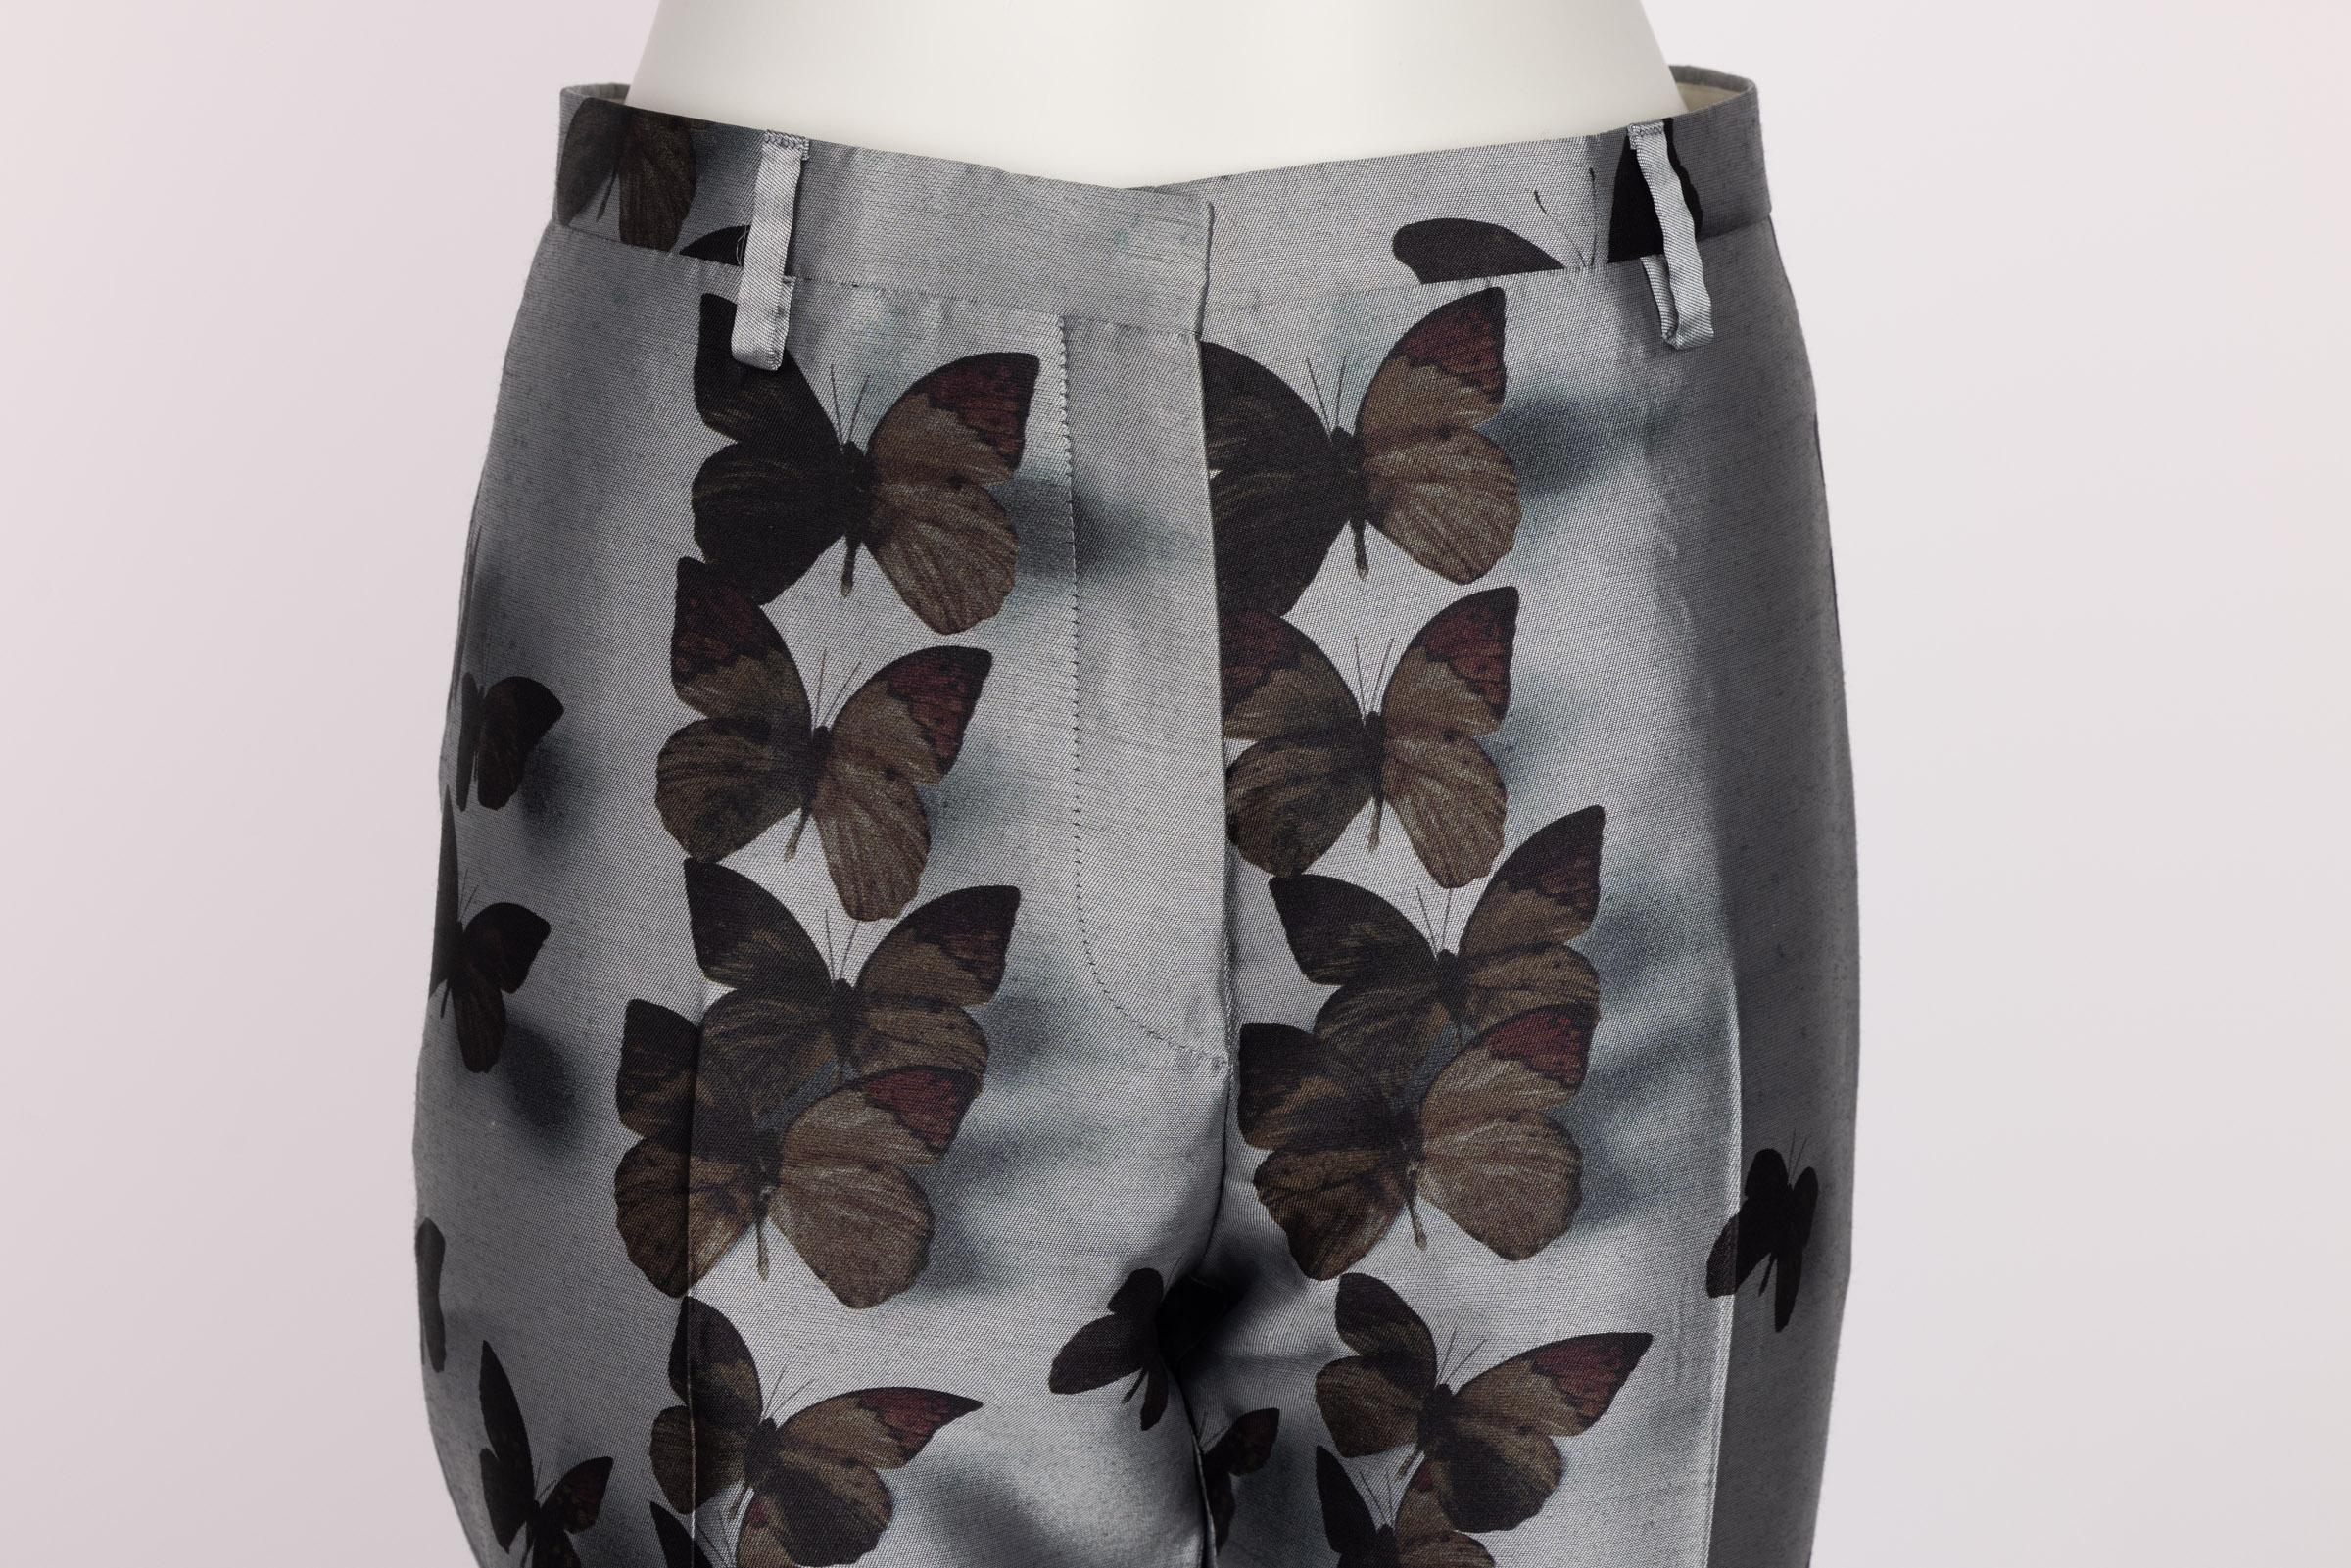 Women's Lanvin Alber Elbaz Silk Butterfly Pants F/W 2013  For Sale